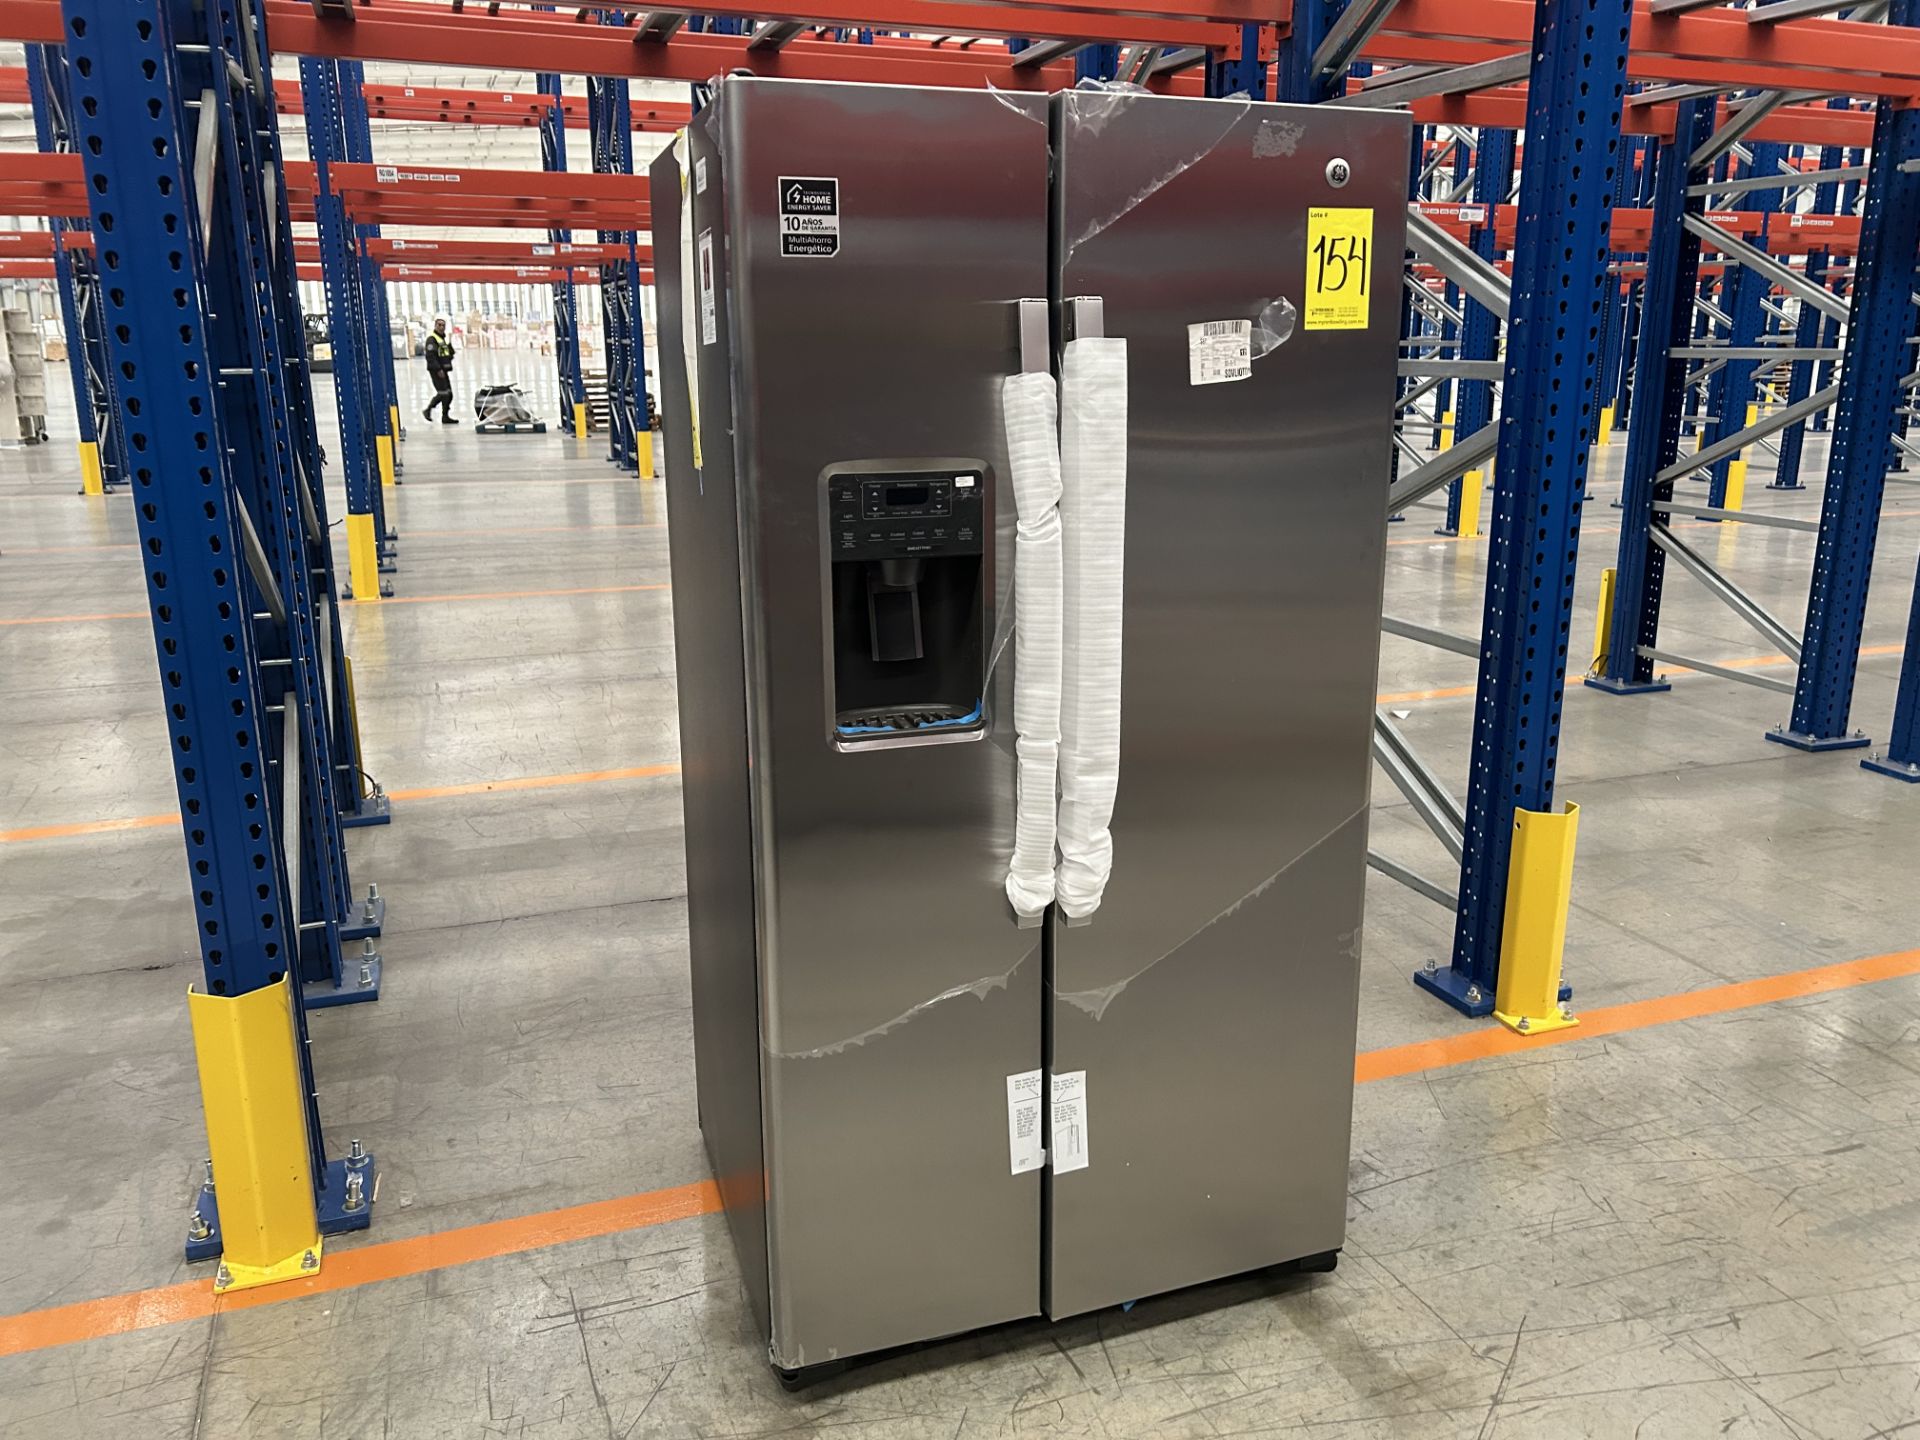 (NUEVO) Lote de 1 Refrigerador con dispensador de agua Marca GE, Modelo GNM26AETFSS, Serie 410165, - Image 2 of 5